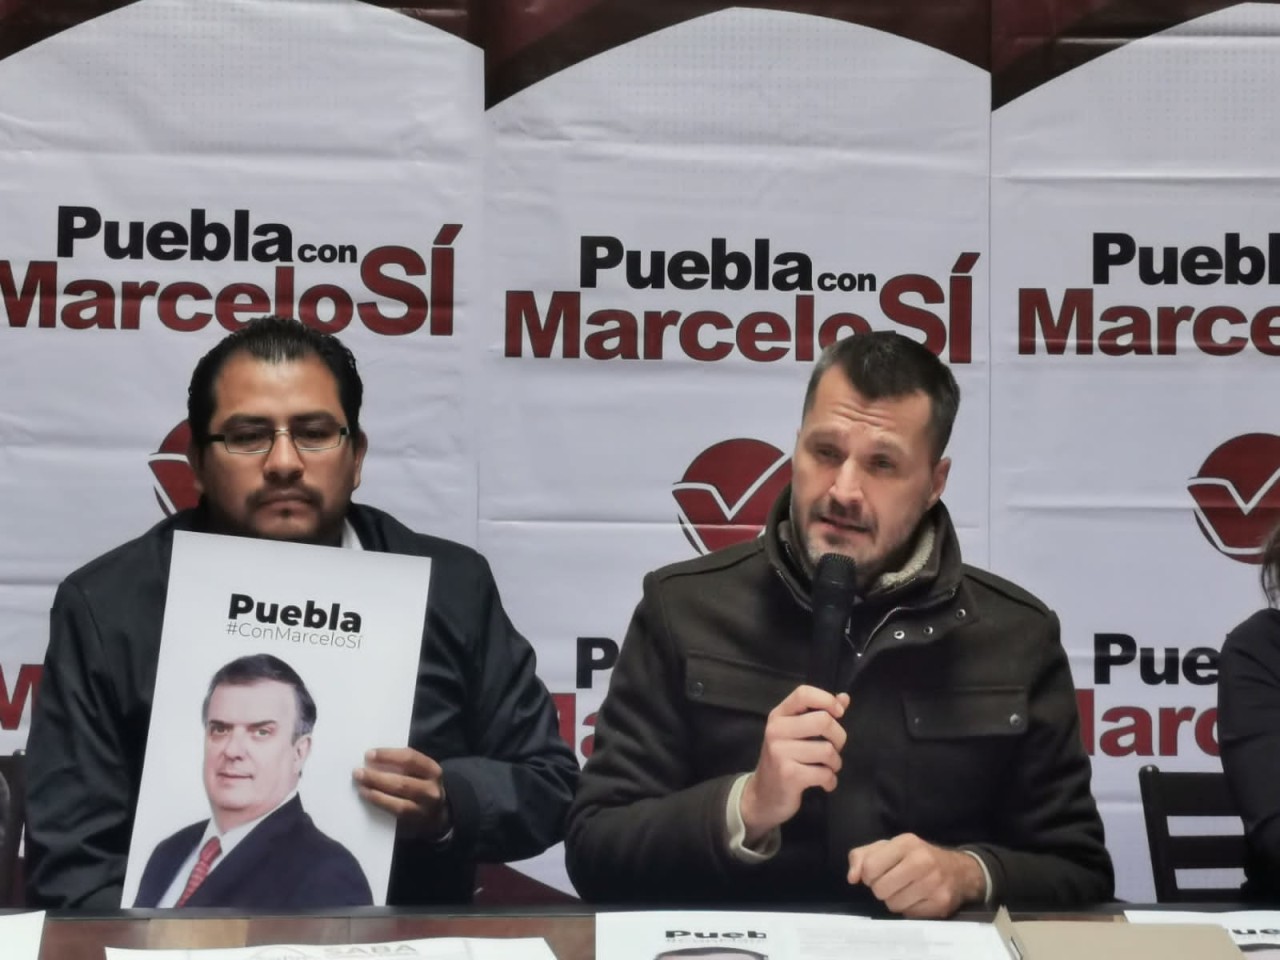 Se deslinda “Puebla con Marcelo Si” de bardas en favor del canciller